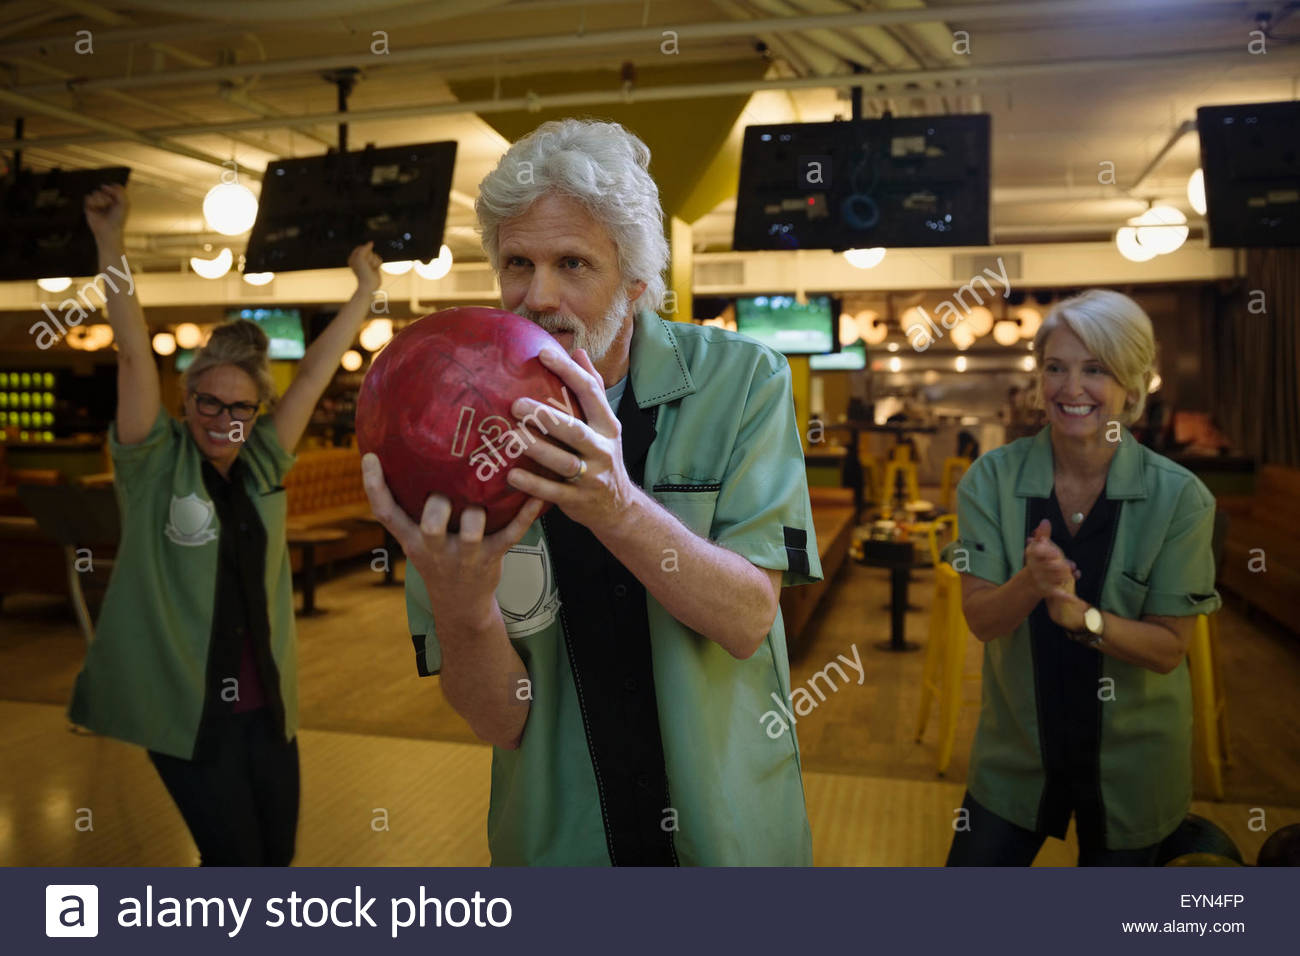 Teammates cheering man bowling at bowling alley Stock Photo